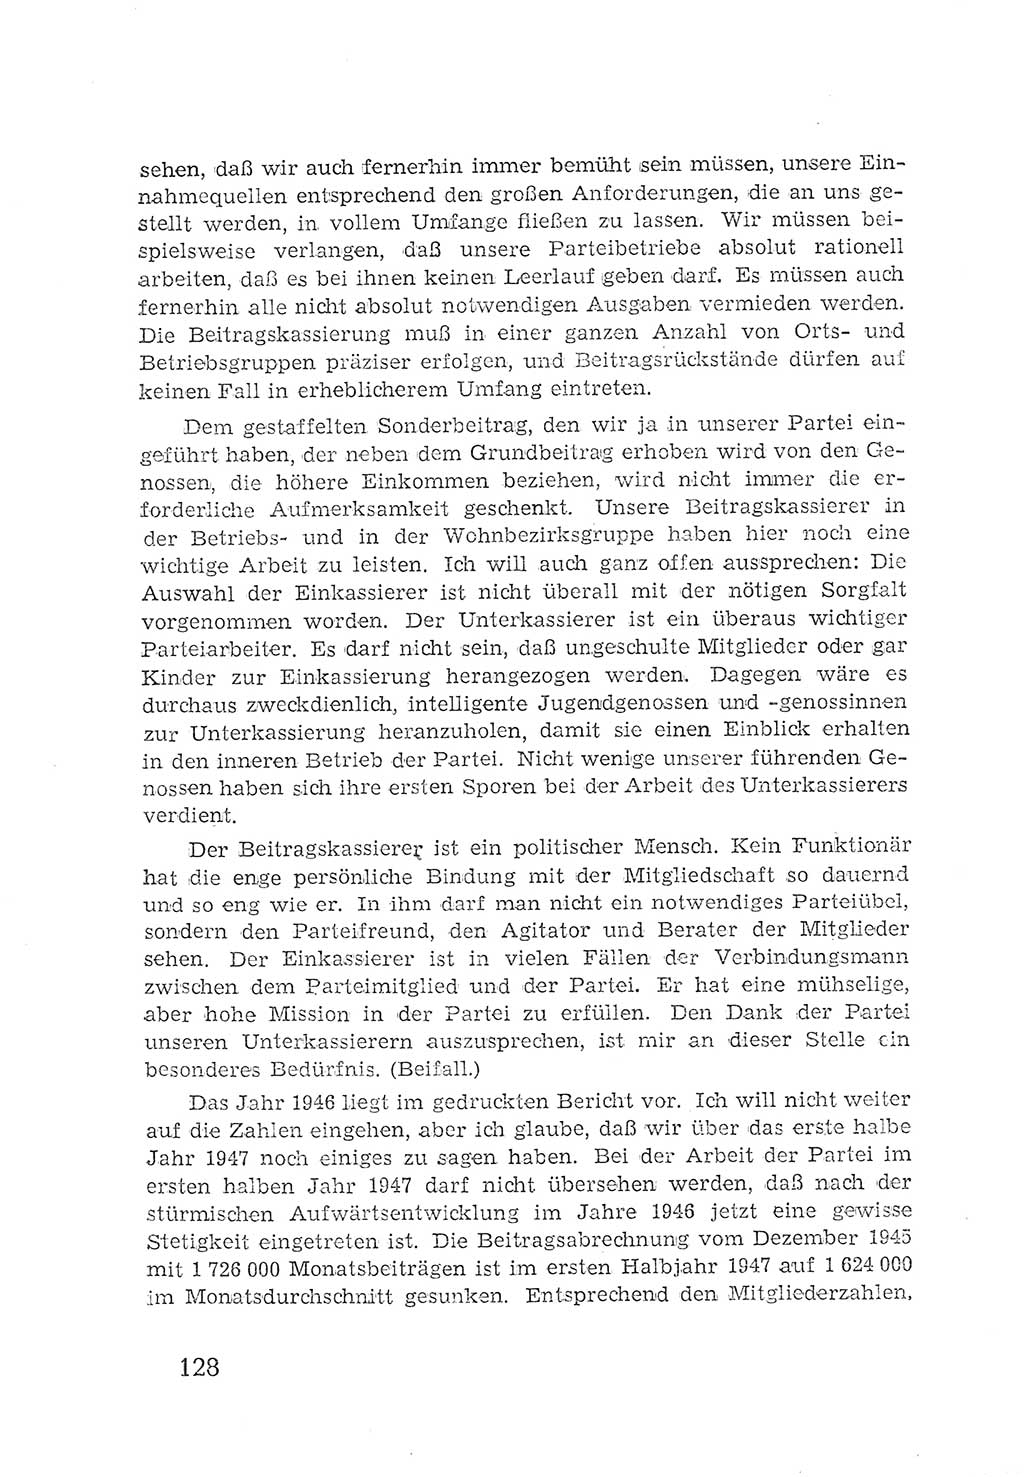 Protokoll der Verhandlungen des 2. Parteitages der Sozialistischen Einheitspartei Deutschlands (SED) [Sowjetische Besatzungszone (SBZ) Deutschlands] 1947, Seite 128 (Prot. Verh. 2. PT SED SBZ Dtl. 1947, S. 128)